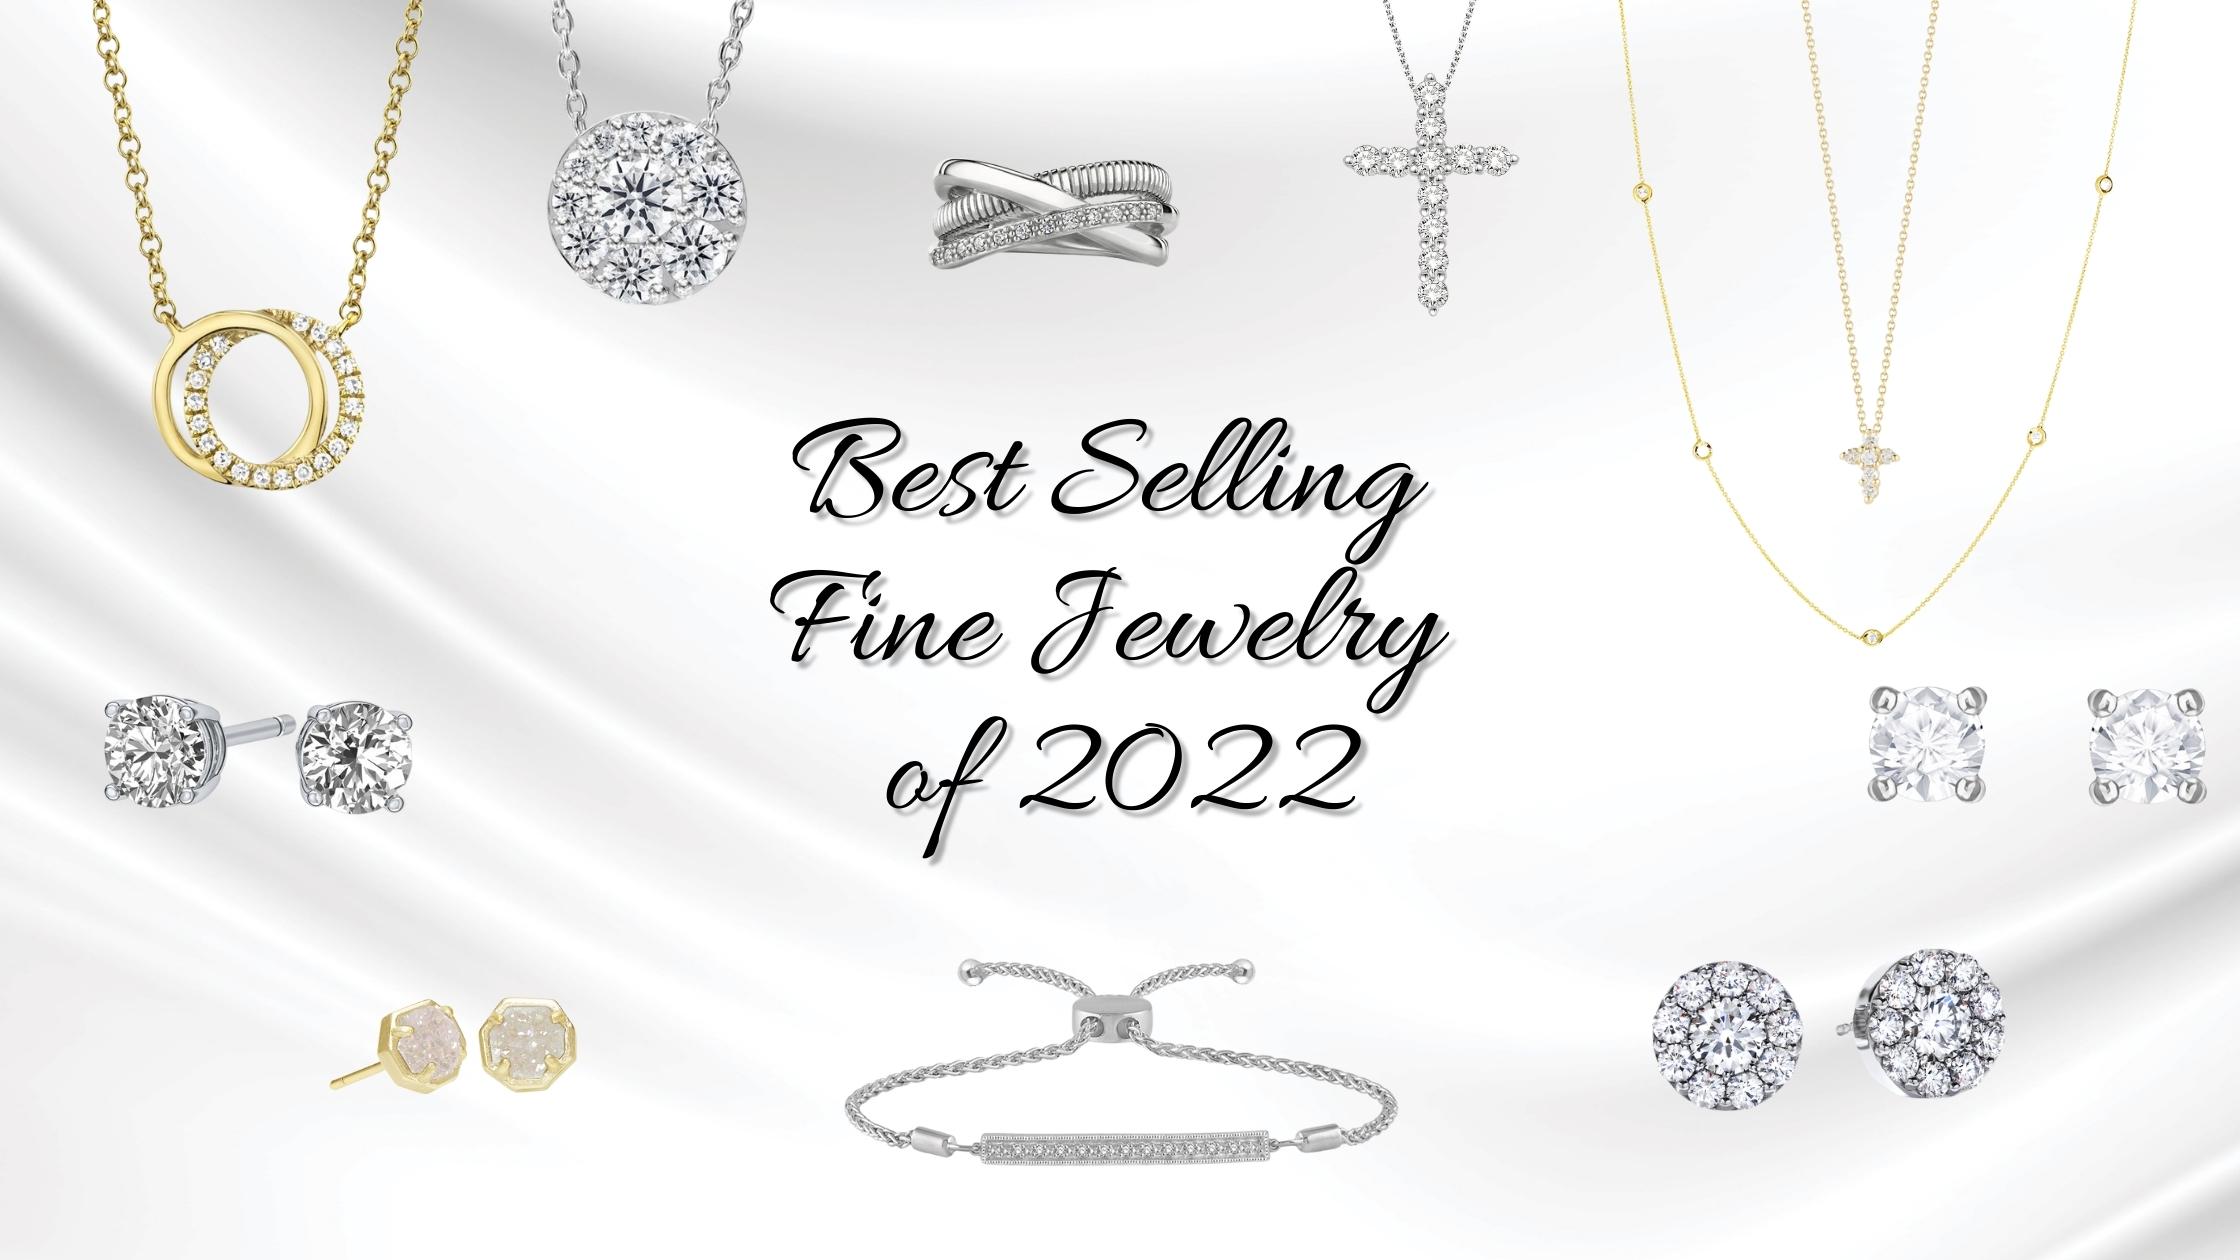 Best Selling Fine Jewelry of 2022